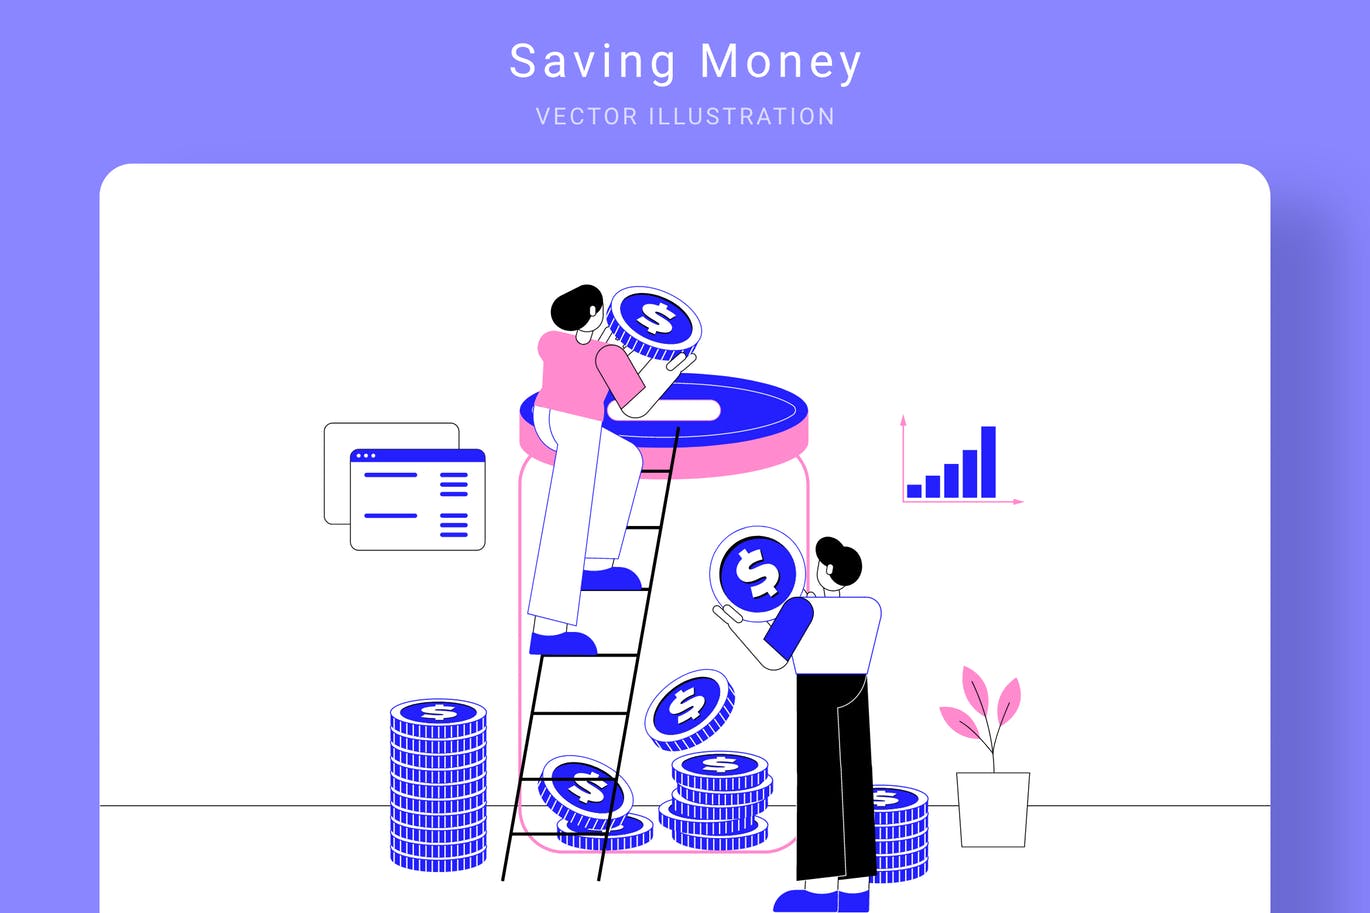 存钱计划主题矢量非凡图库精选概念插画素材 Saving Money Vector Illustration插图